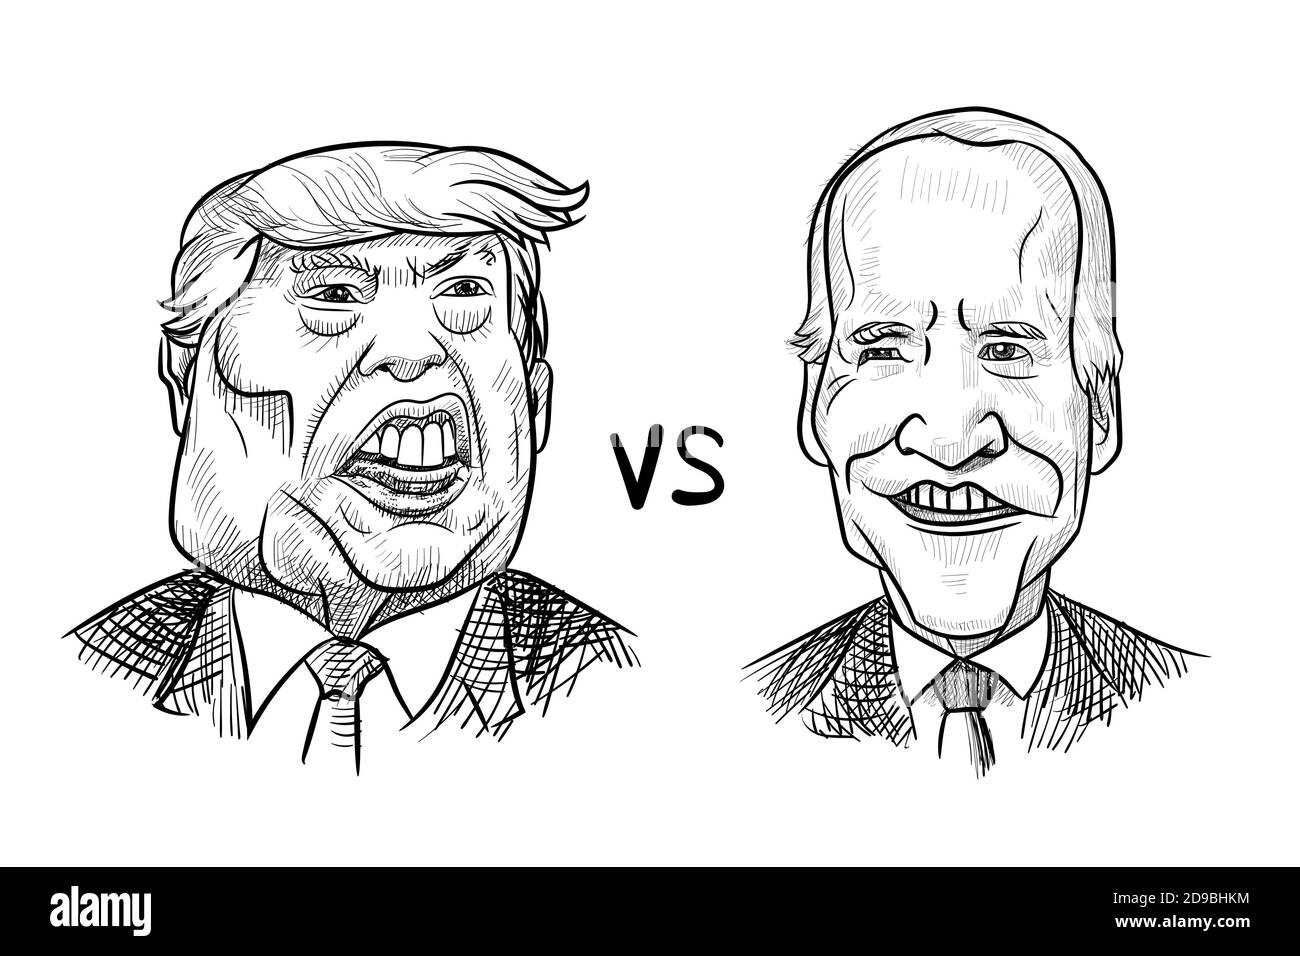 4. Nov 2020, Bangkok, Thailand: Karikaturenzeichnung Porträt des Republikaners Donald Trump gegen den Demokraten Joe Biden für die amerikanische Präsidentschaftswahl 2020. Stock Vektor